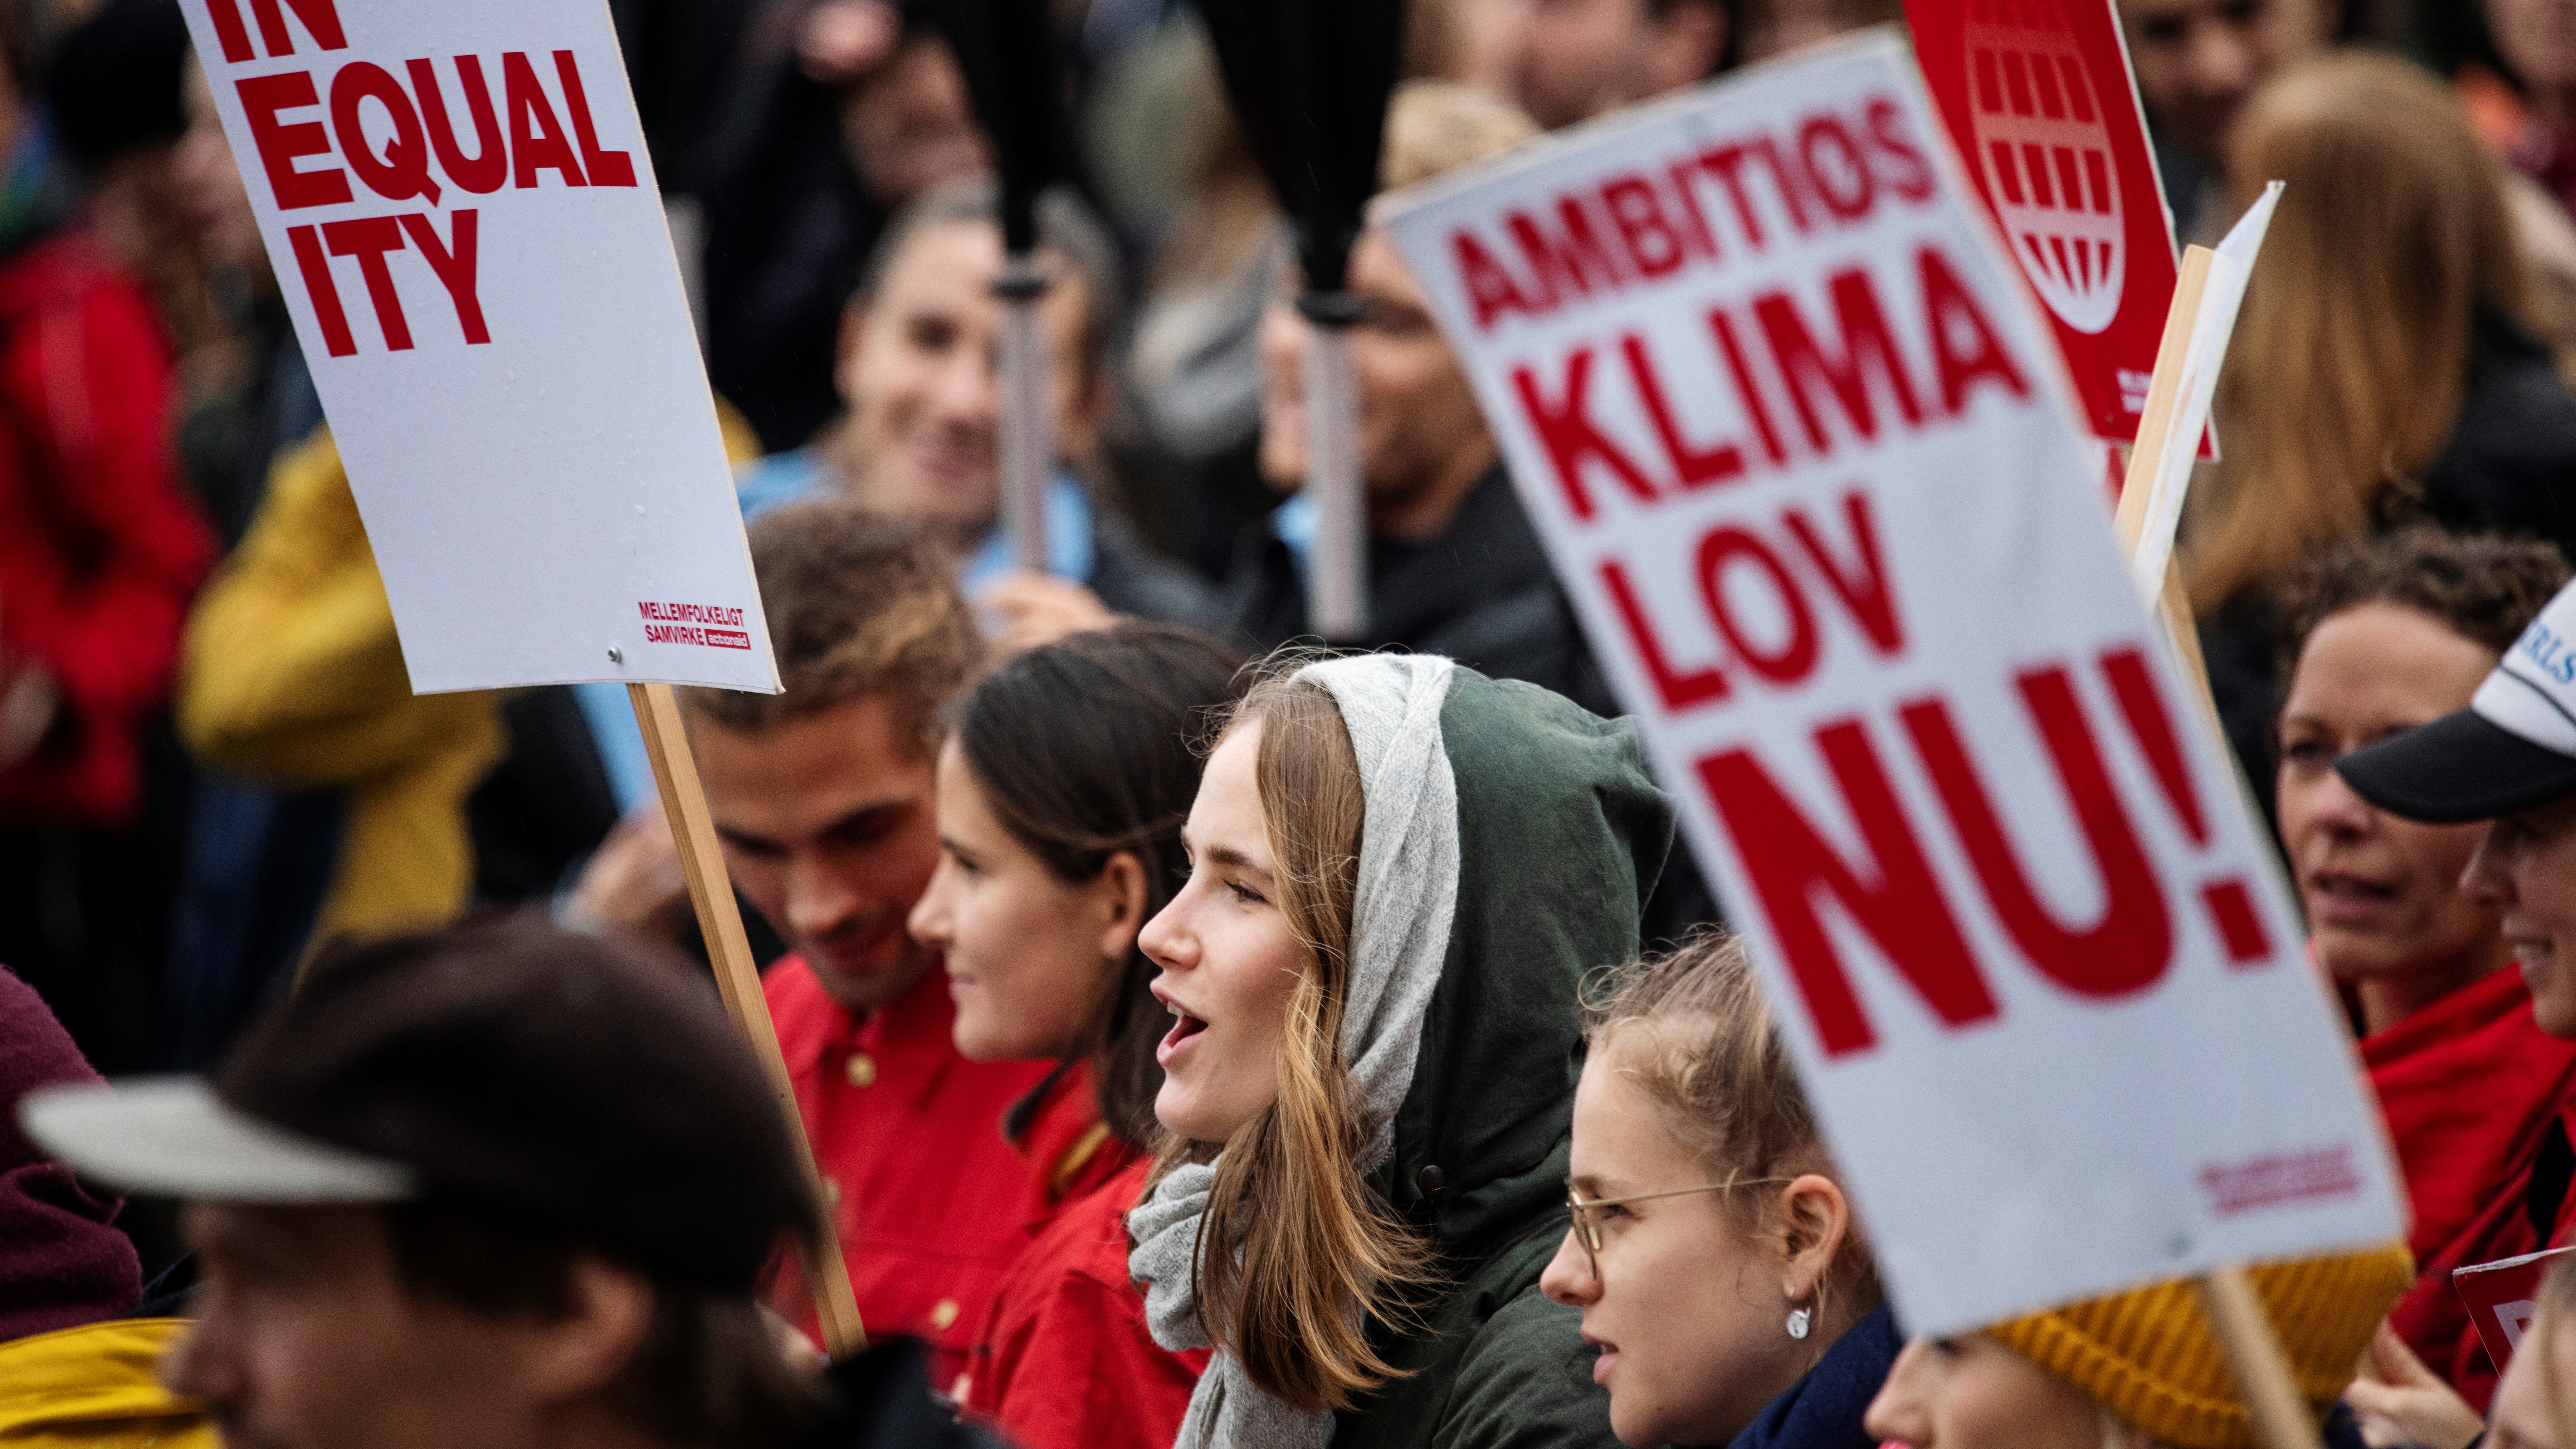 Signe Munk svarer Carolina Maier: Klimaregningen må og skal fordeles rimeligt. Ellers mister vi det brede grønne momentum